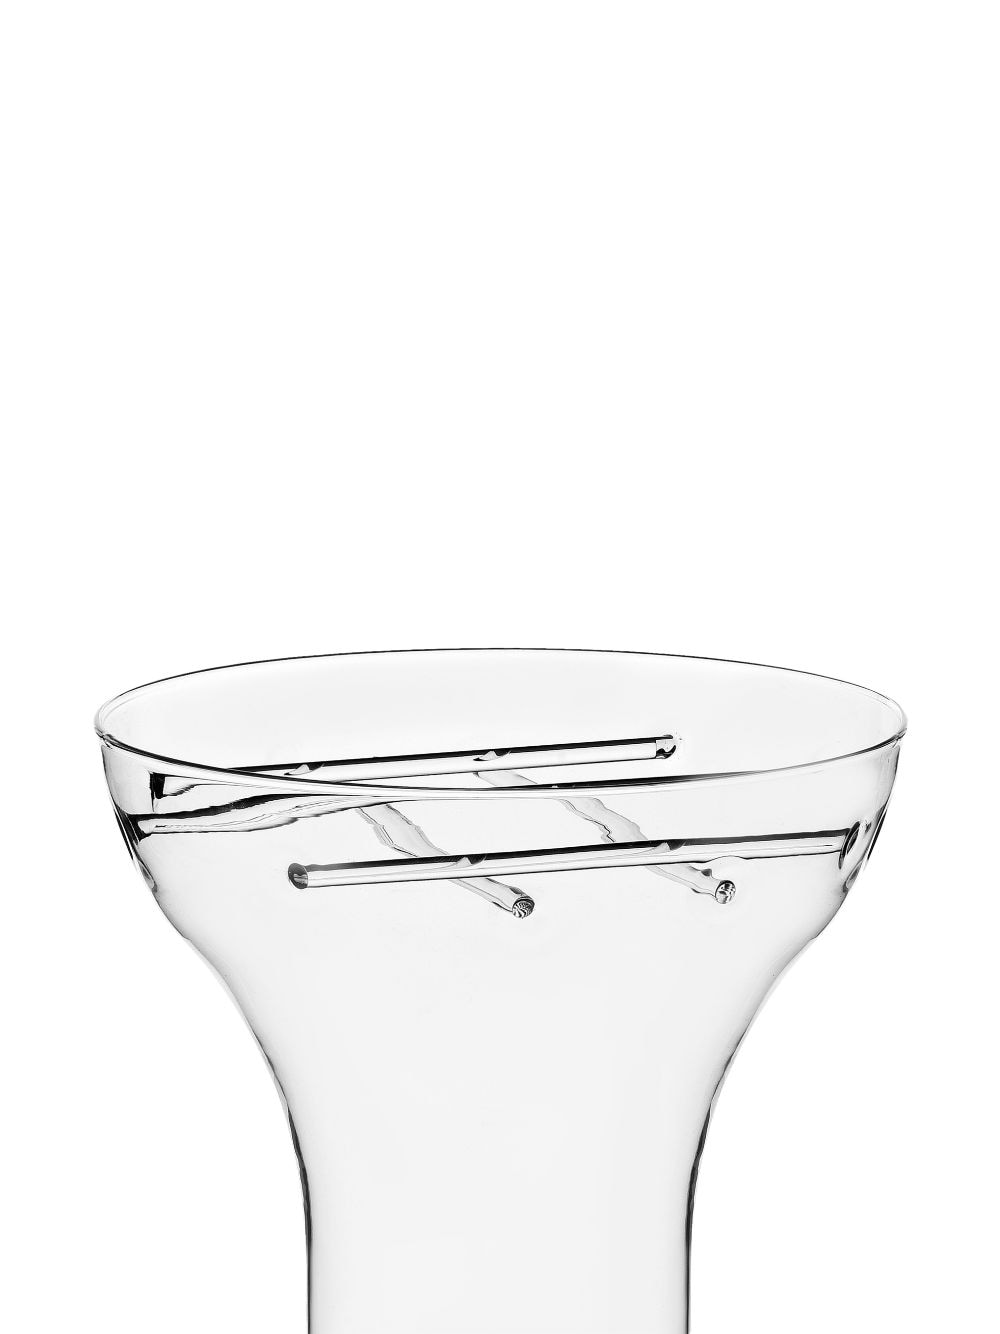 Ichendorf Milano large Trame glass vase - Beige